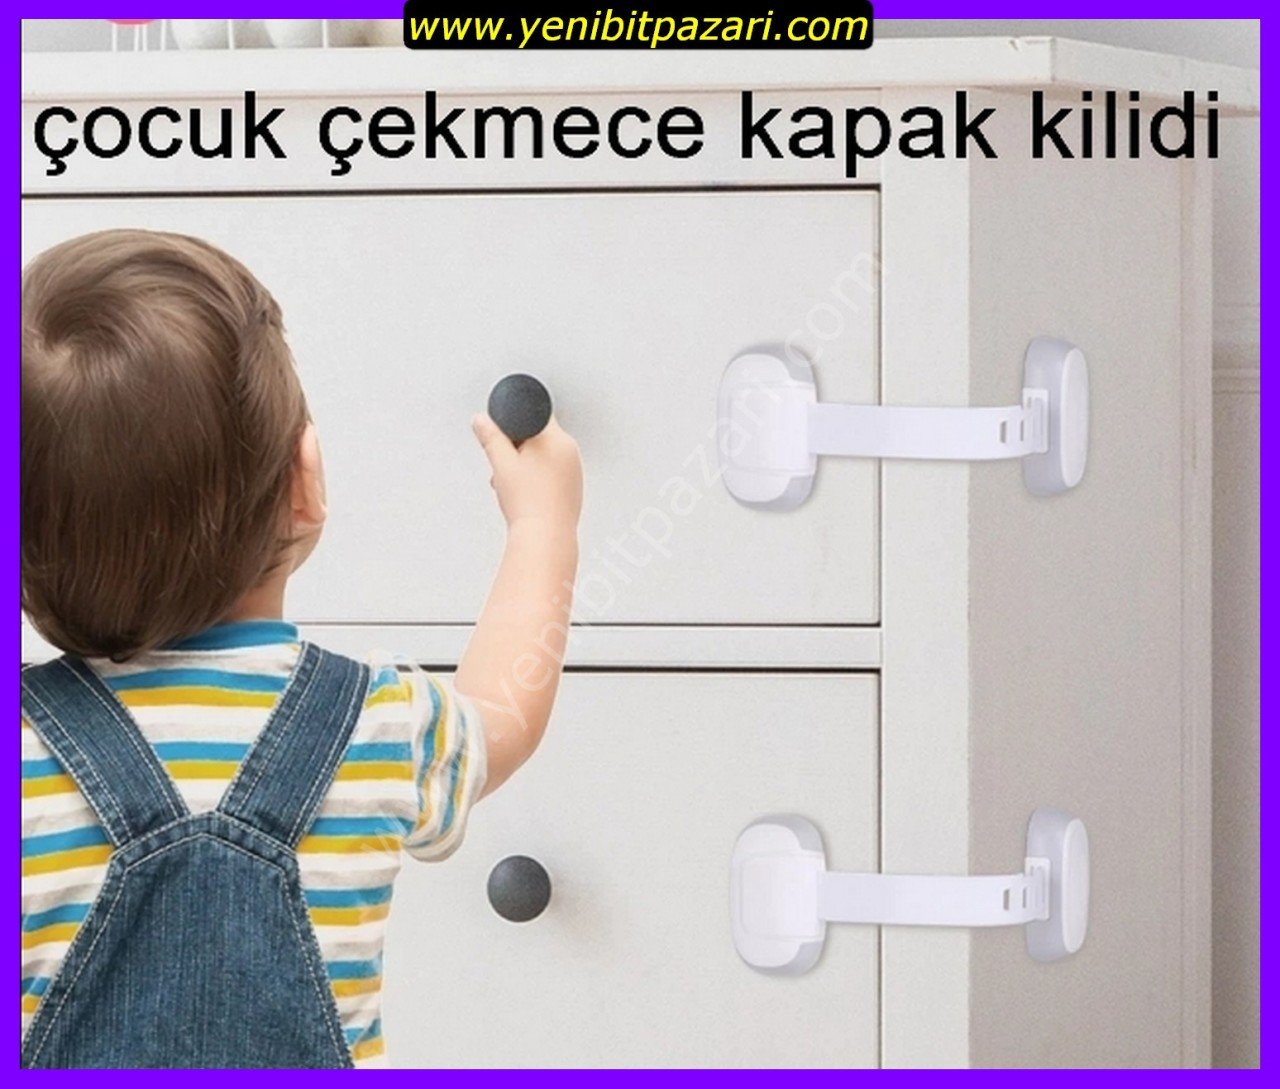 wee baby çocuk güvenlik sistemleri kilitleri kod916 dolap kapak çekmece kilidi 1 adet ( köşe bağlantılı )